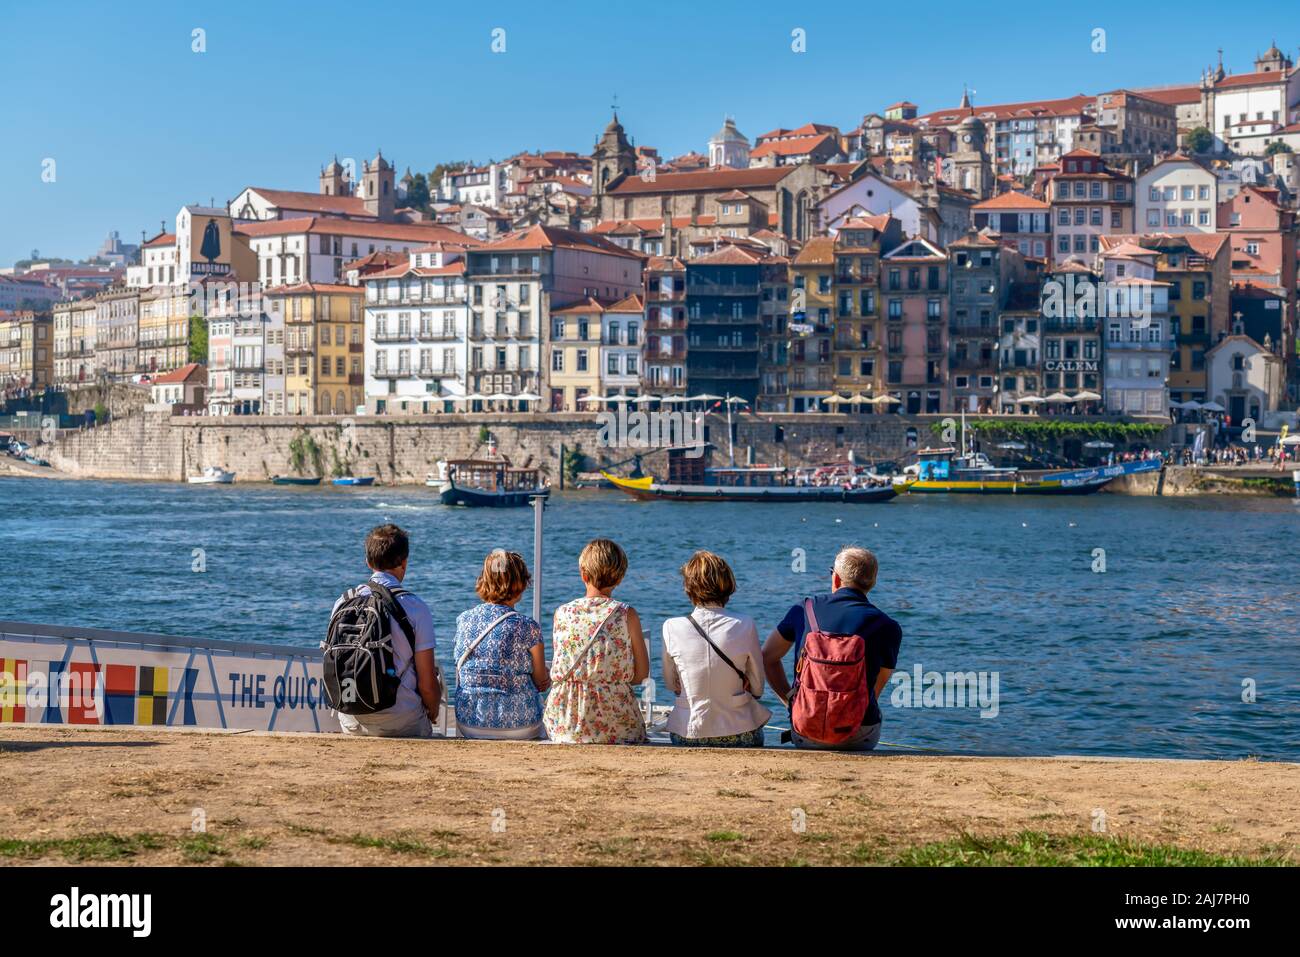 Turisti che si siedono sulle rive del fiume Douro godendo la vista attraverso l'acqua con la variopinta città di Porto, Portogallo. Fotografia: Tony Taylor Foto Stock